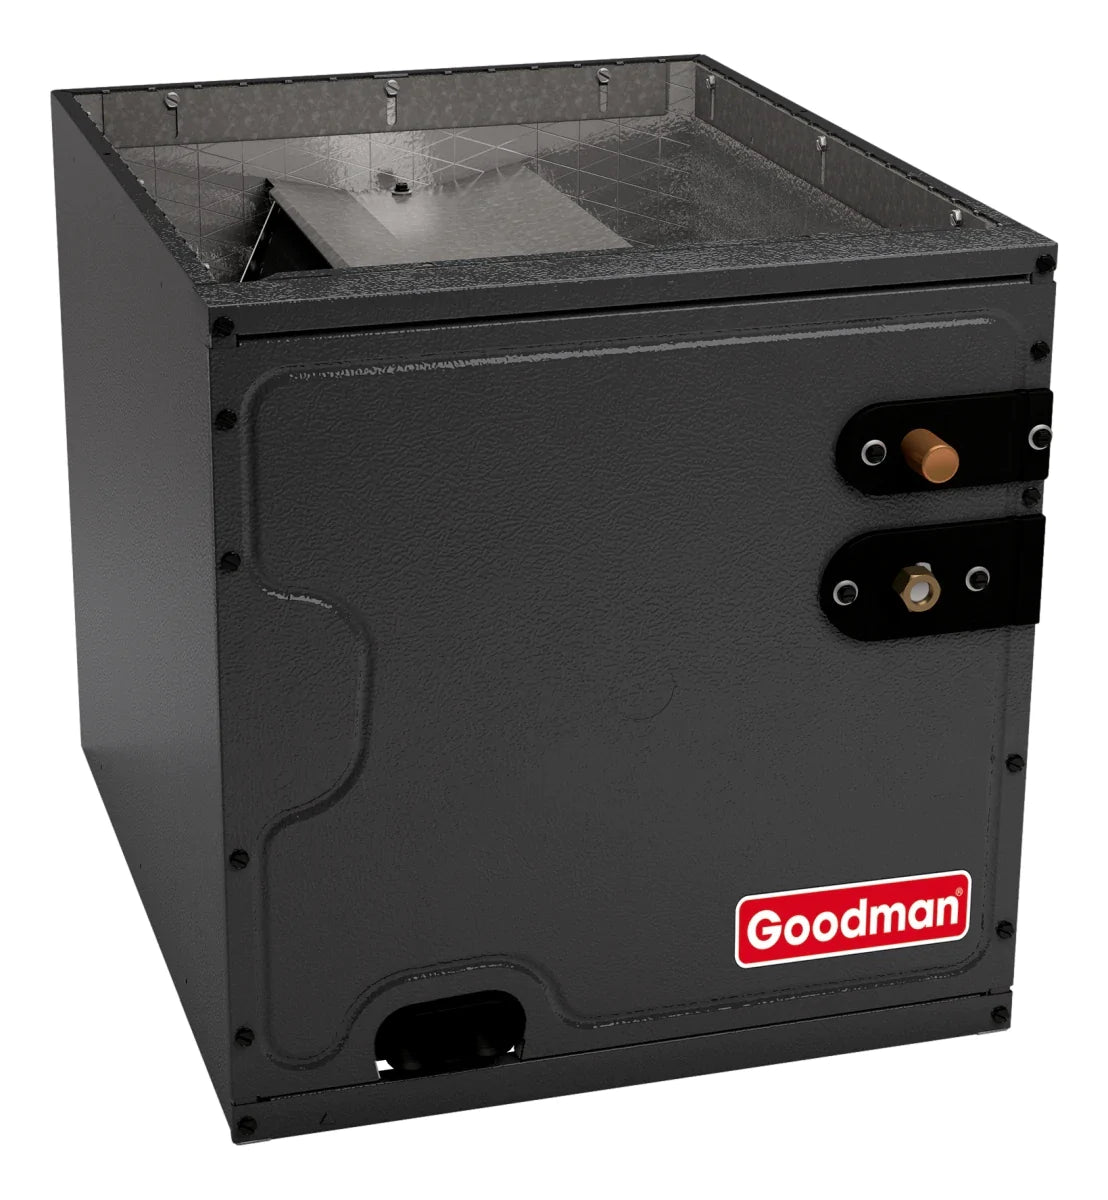 Goodman 2.5 TON 15 SEER2 Upflow AC system with 80% AFUE 60k BTU 2 stage Low NOx Furnace (GSXM403010, CAPTA3626B4, GMVC800604BX)